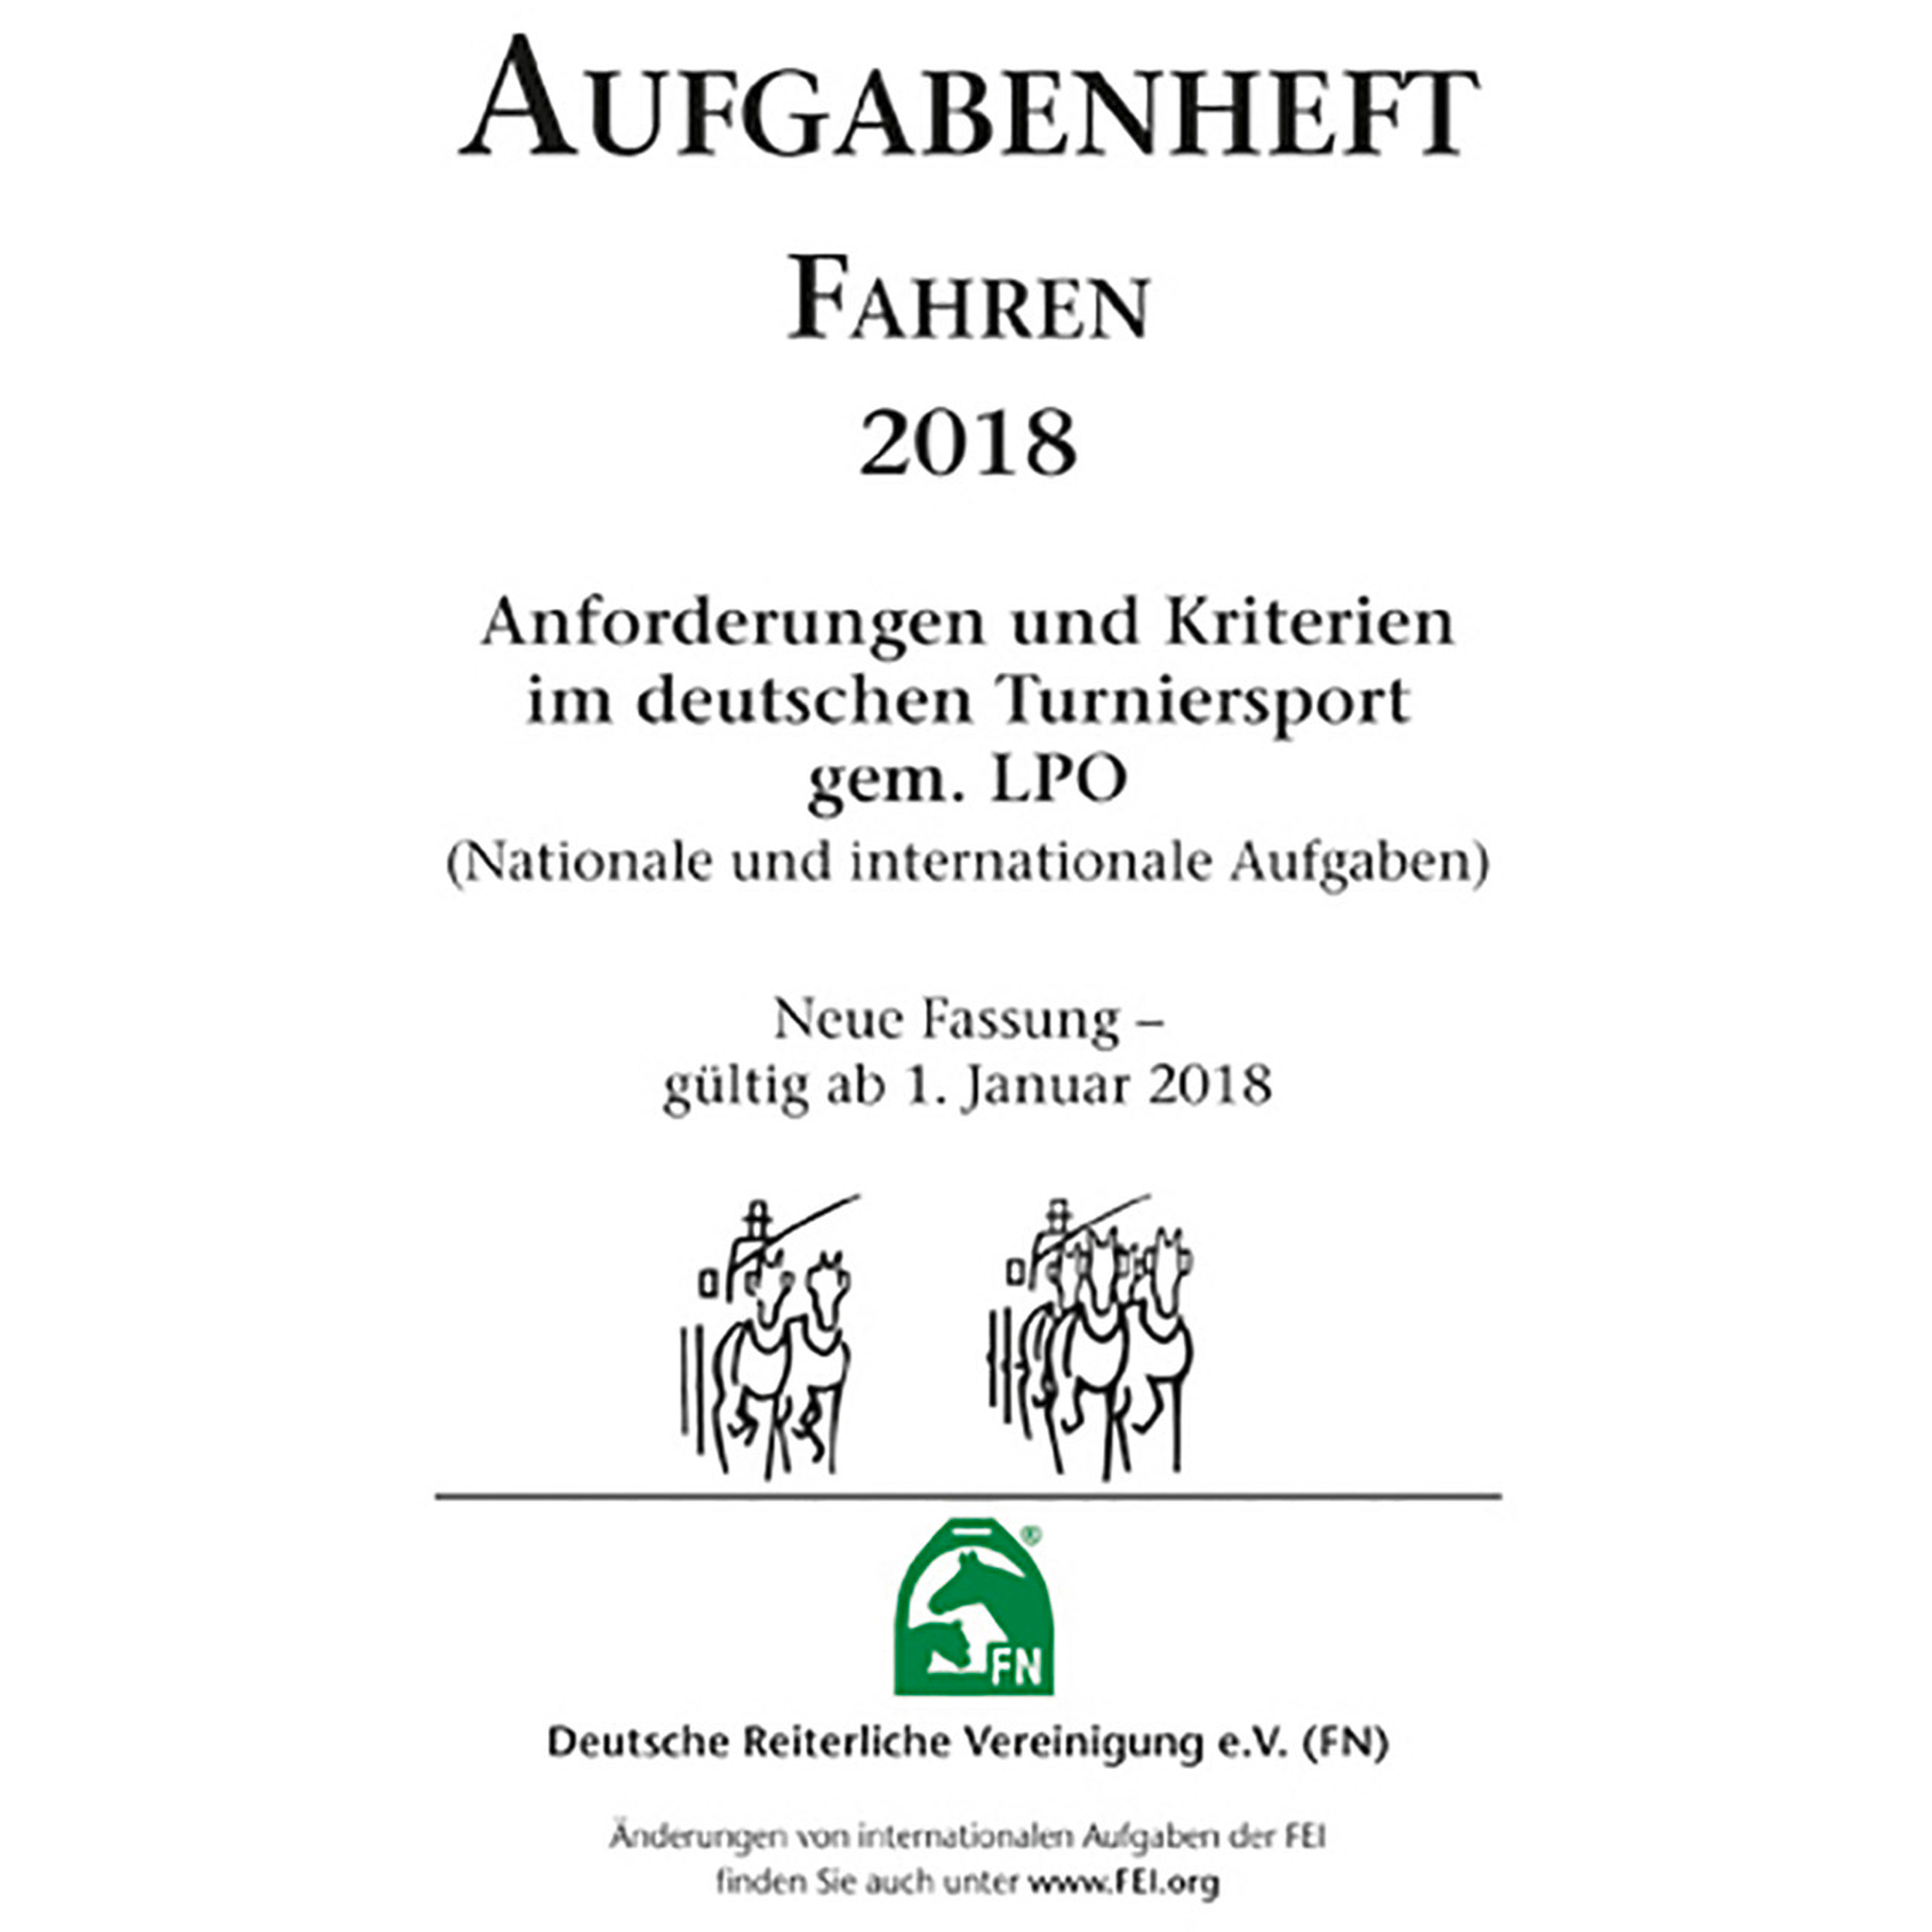 Aufgabenheft 2018 – Fahren – Inhalt (Nat./int. Aufg.)